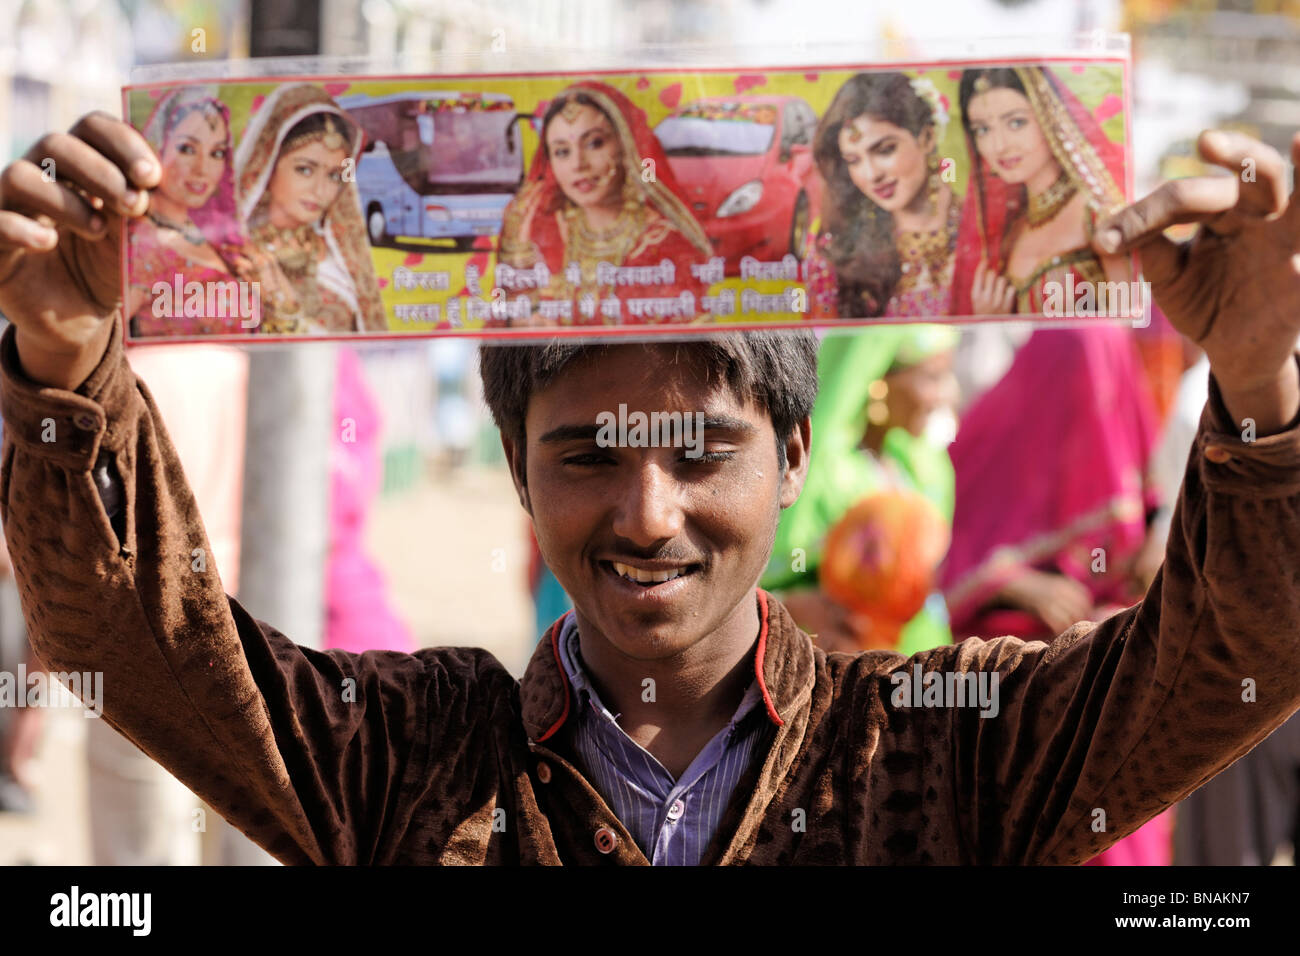 A Boy selling bollywood stars poster of Indian cinema at Pushkar fair, Rajasthan, India. Stock Photo